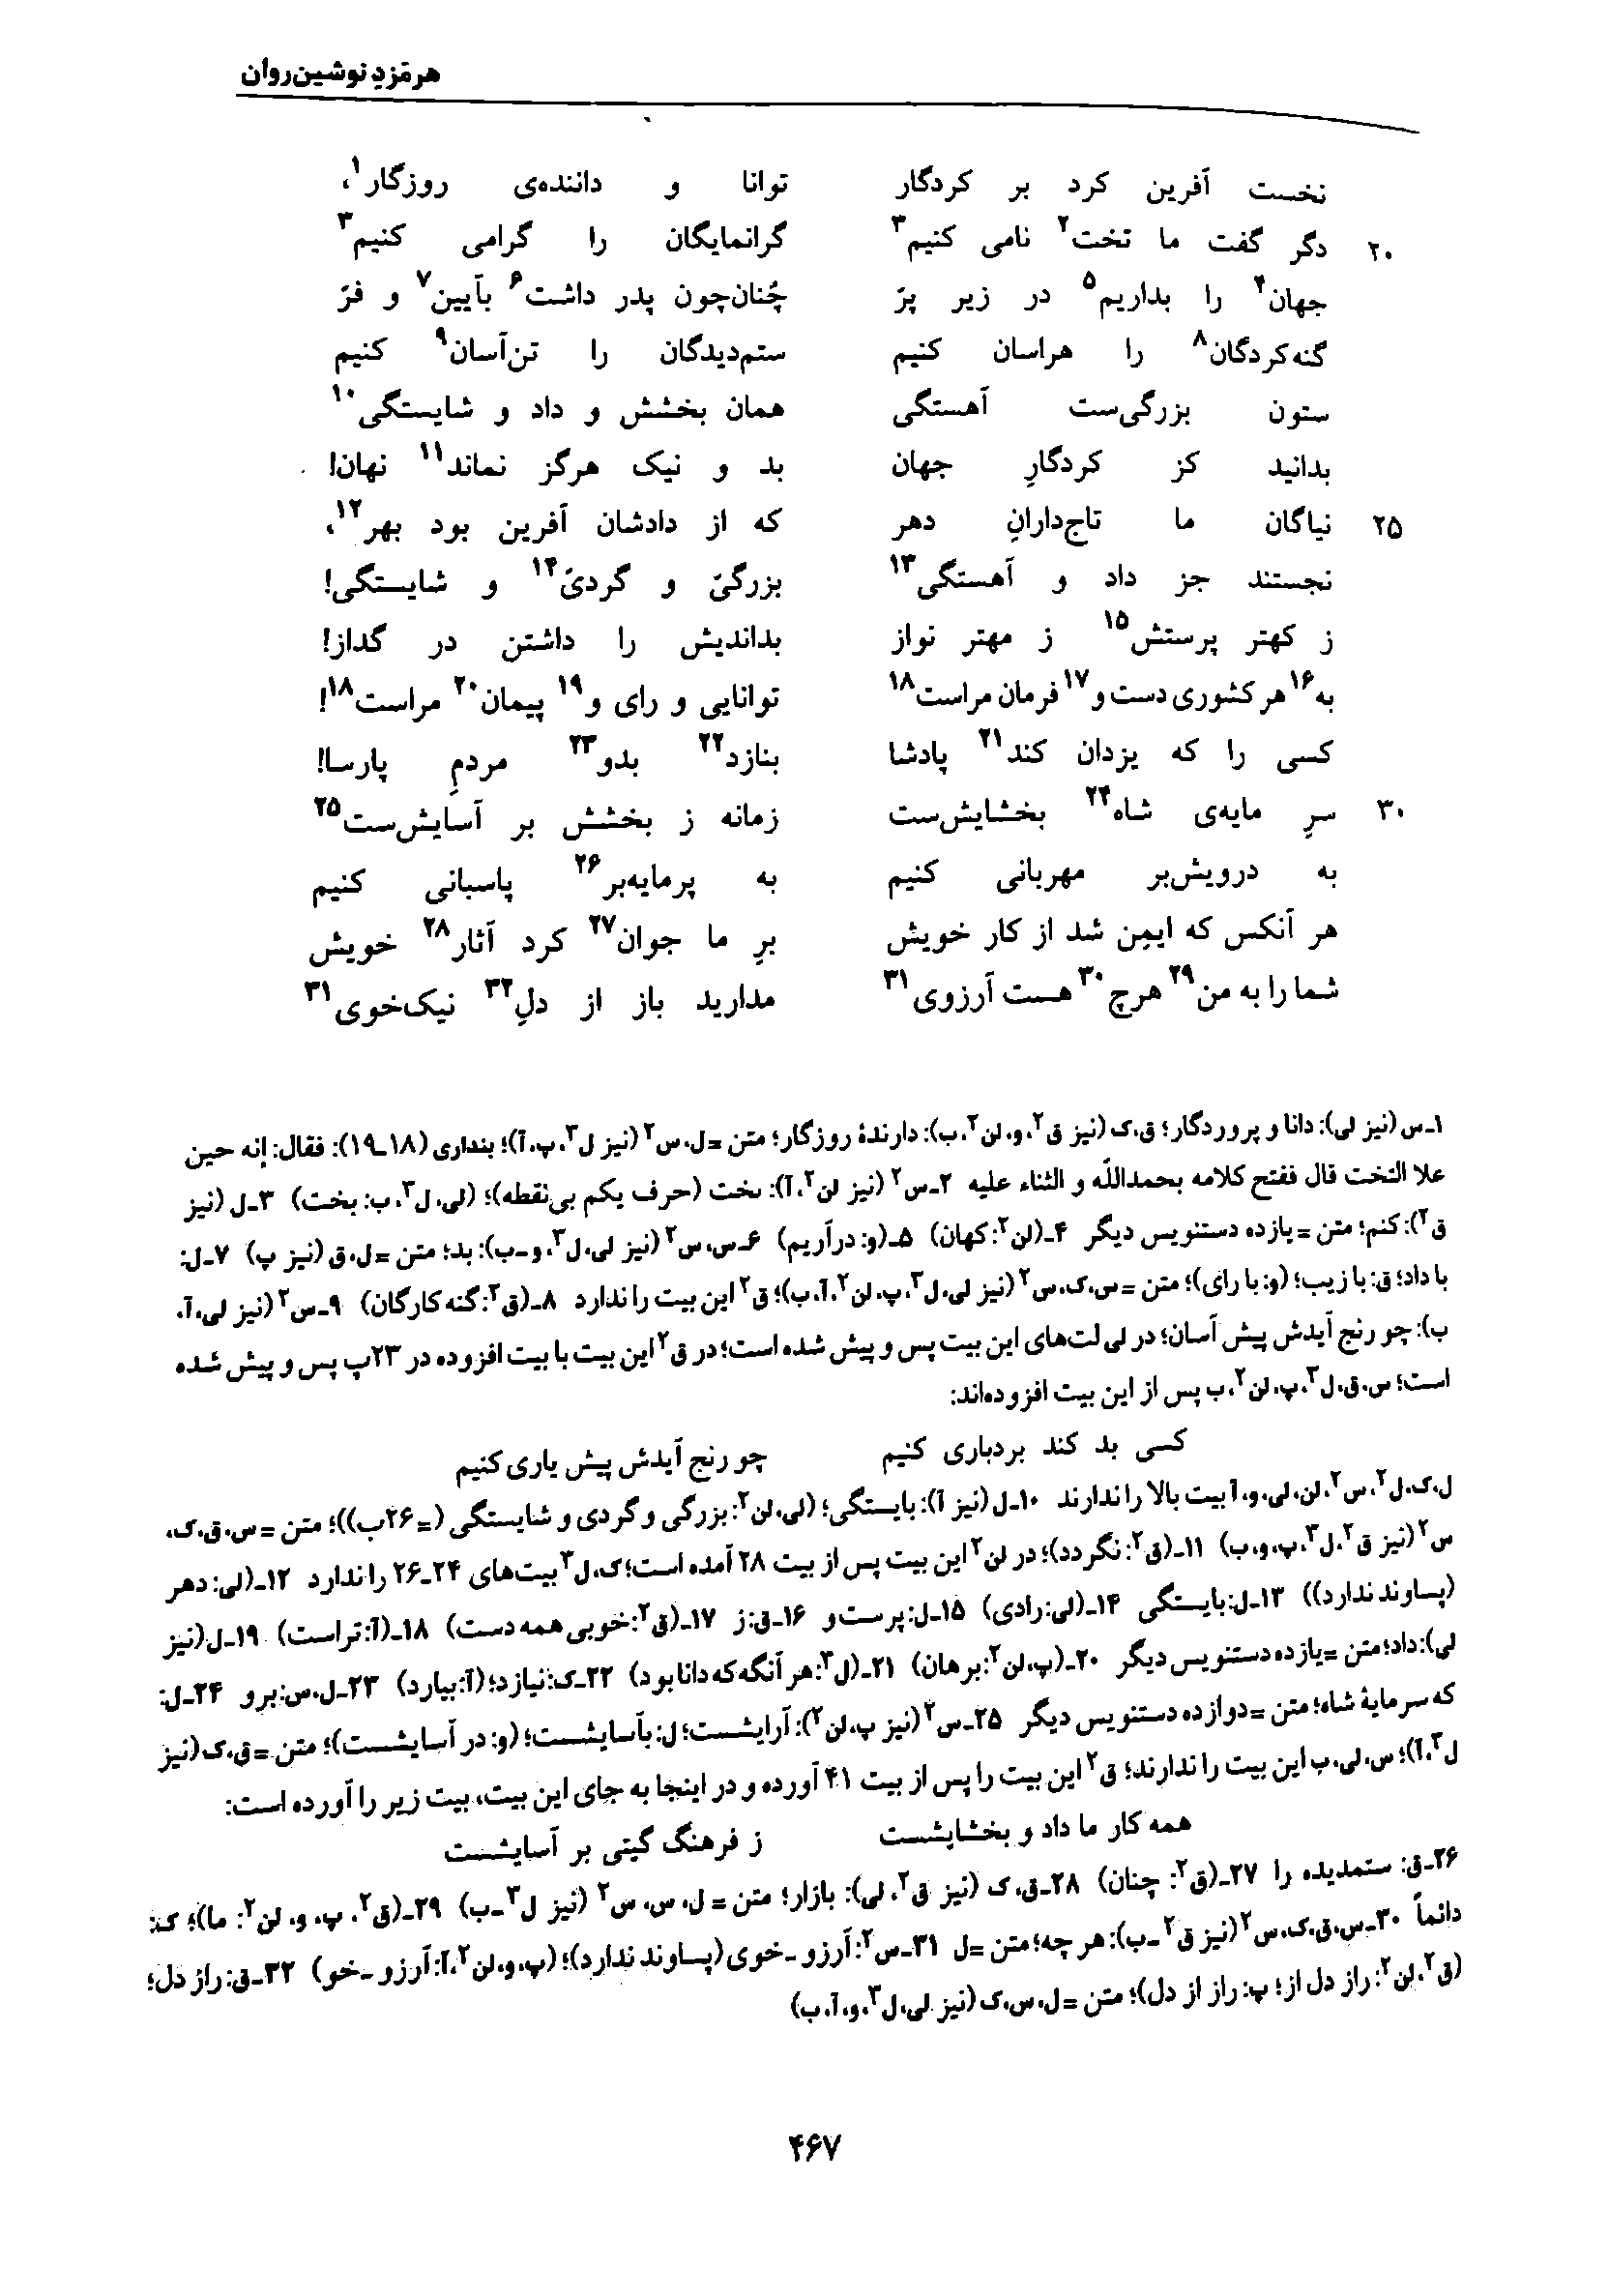 vol. 7, p. 467